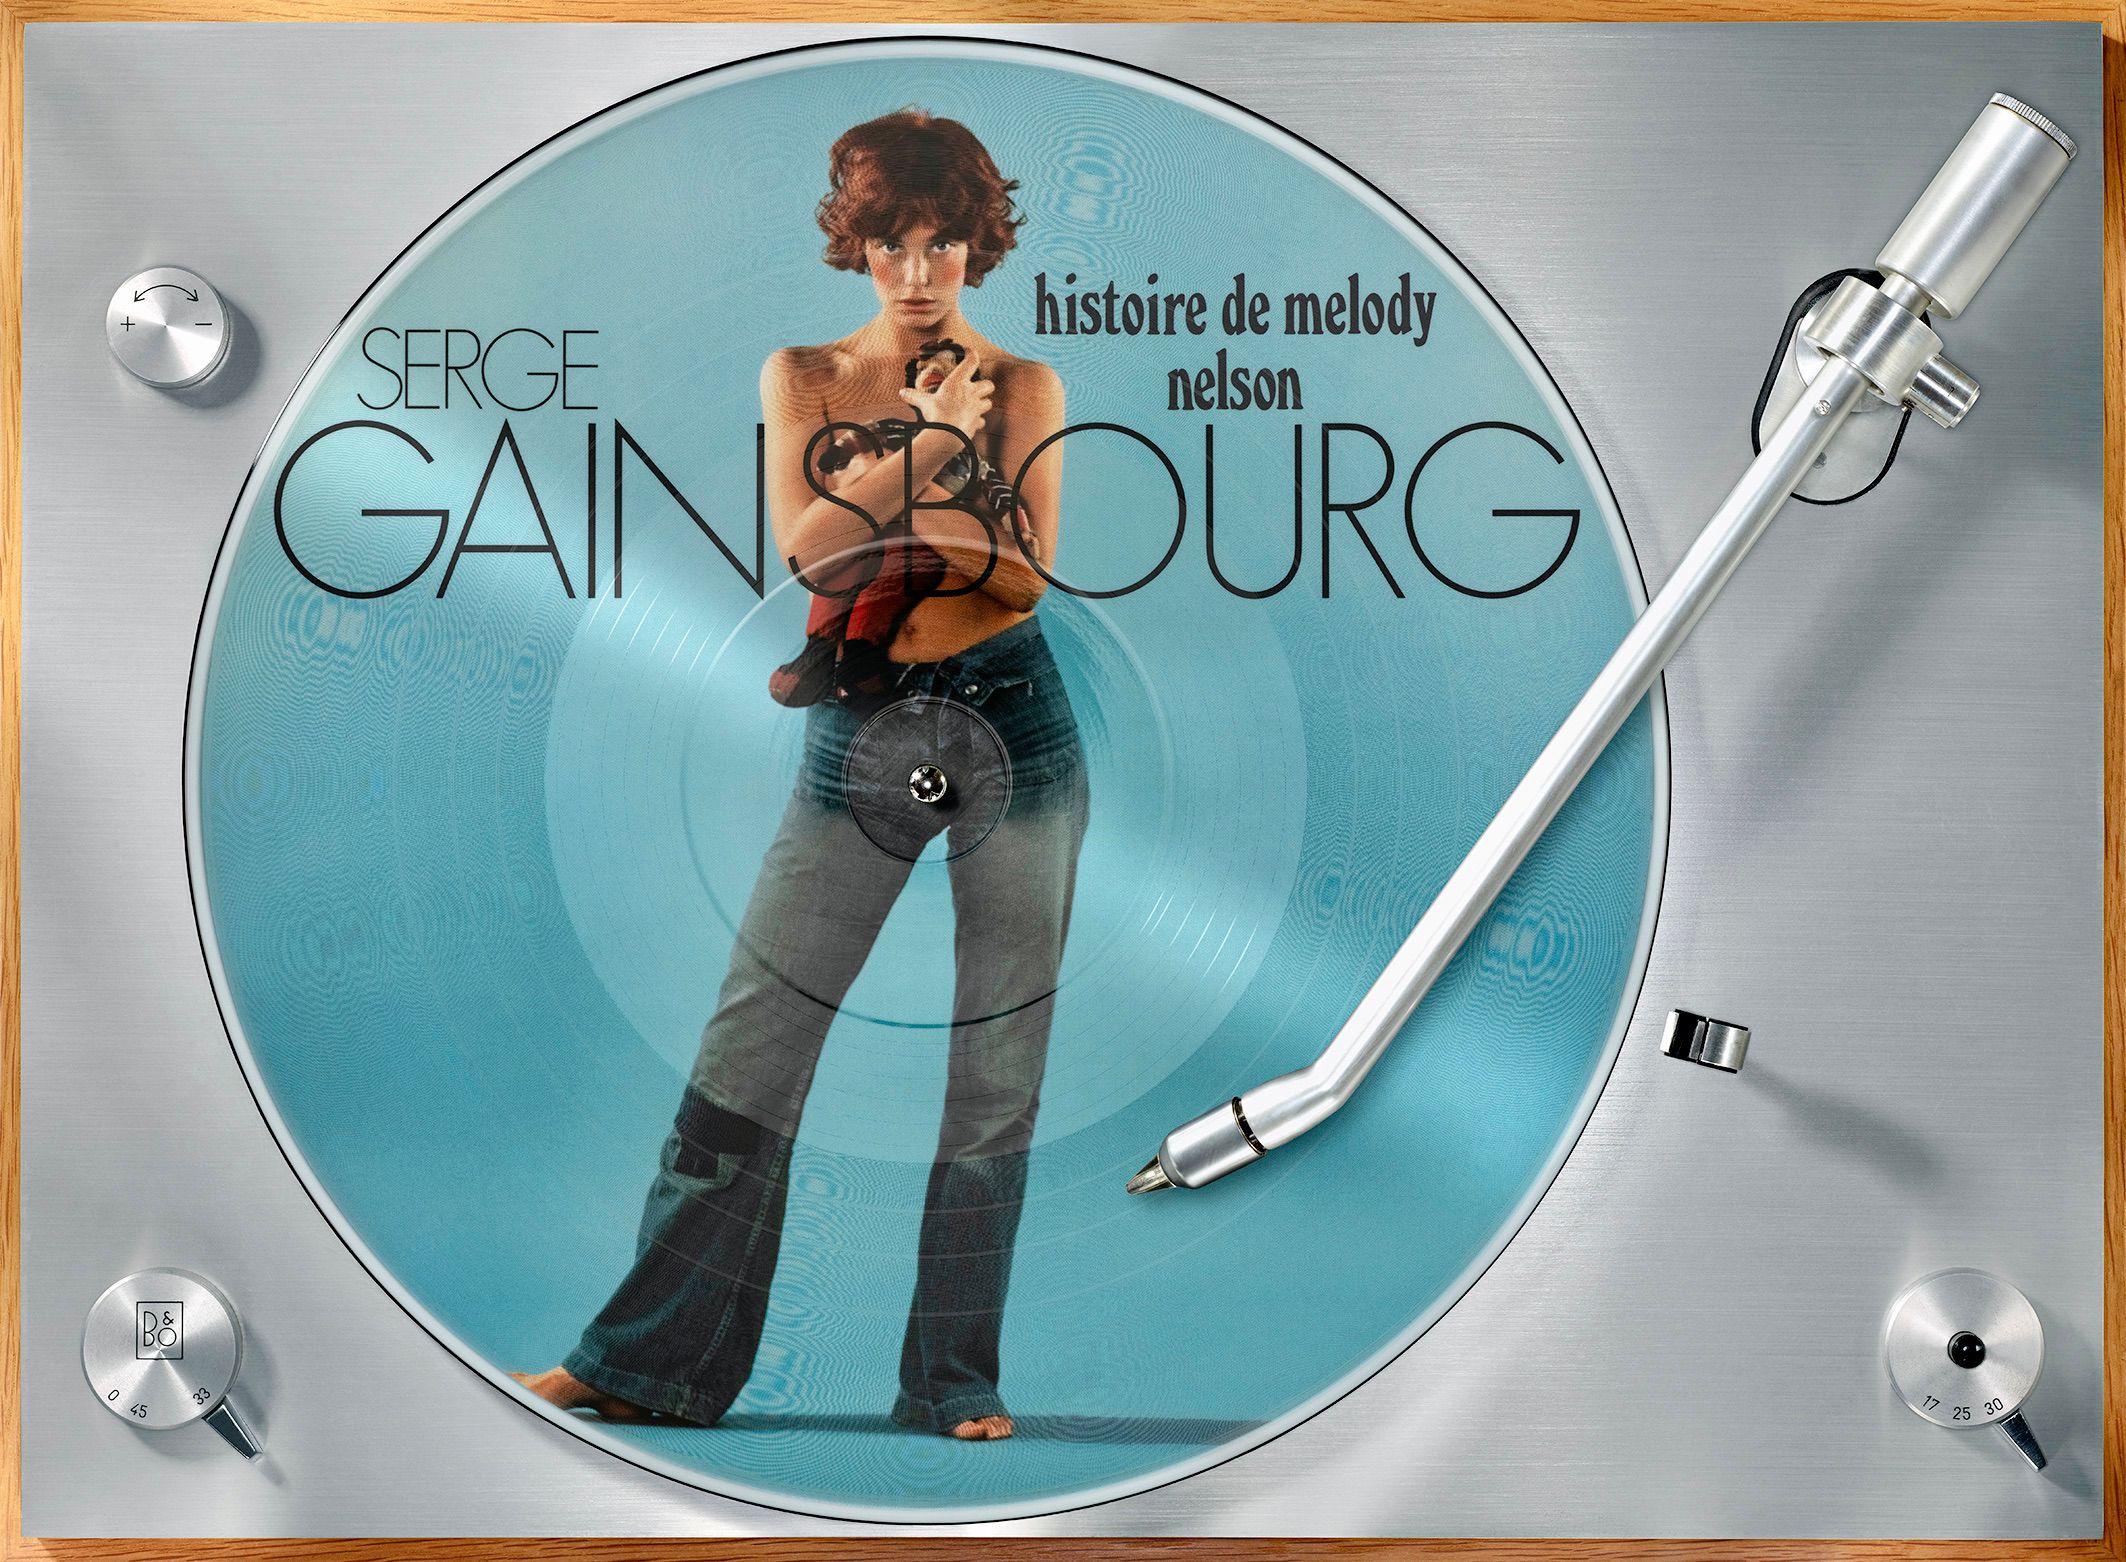 Kai Schäfer 摄影 唱片机与Serge Gainsbourg "histoire de melody nelson" 黑胶唱片